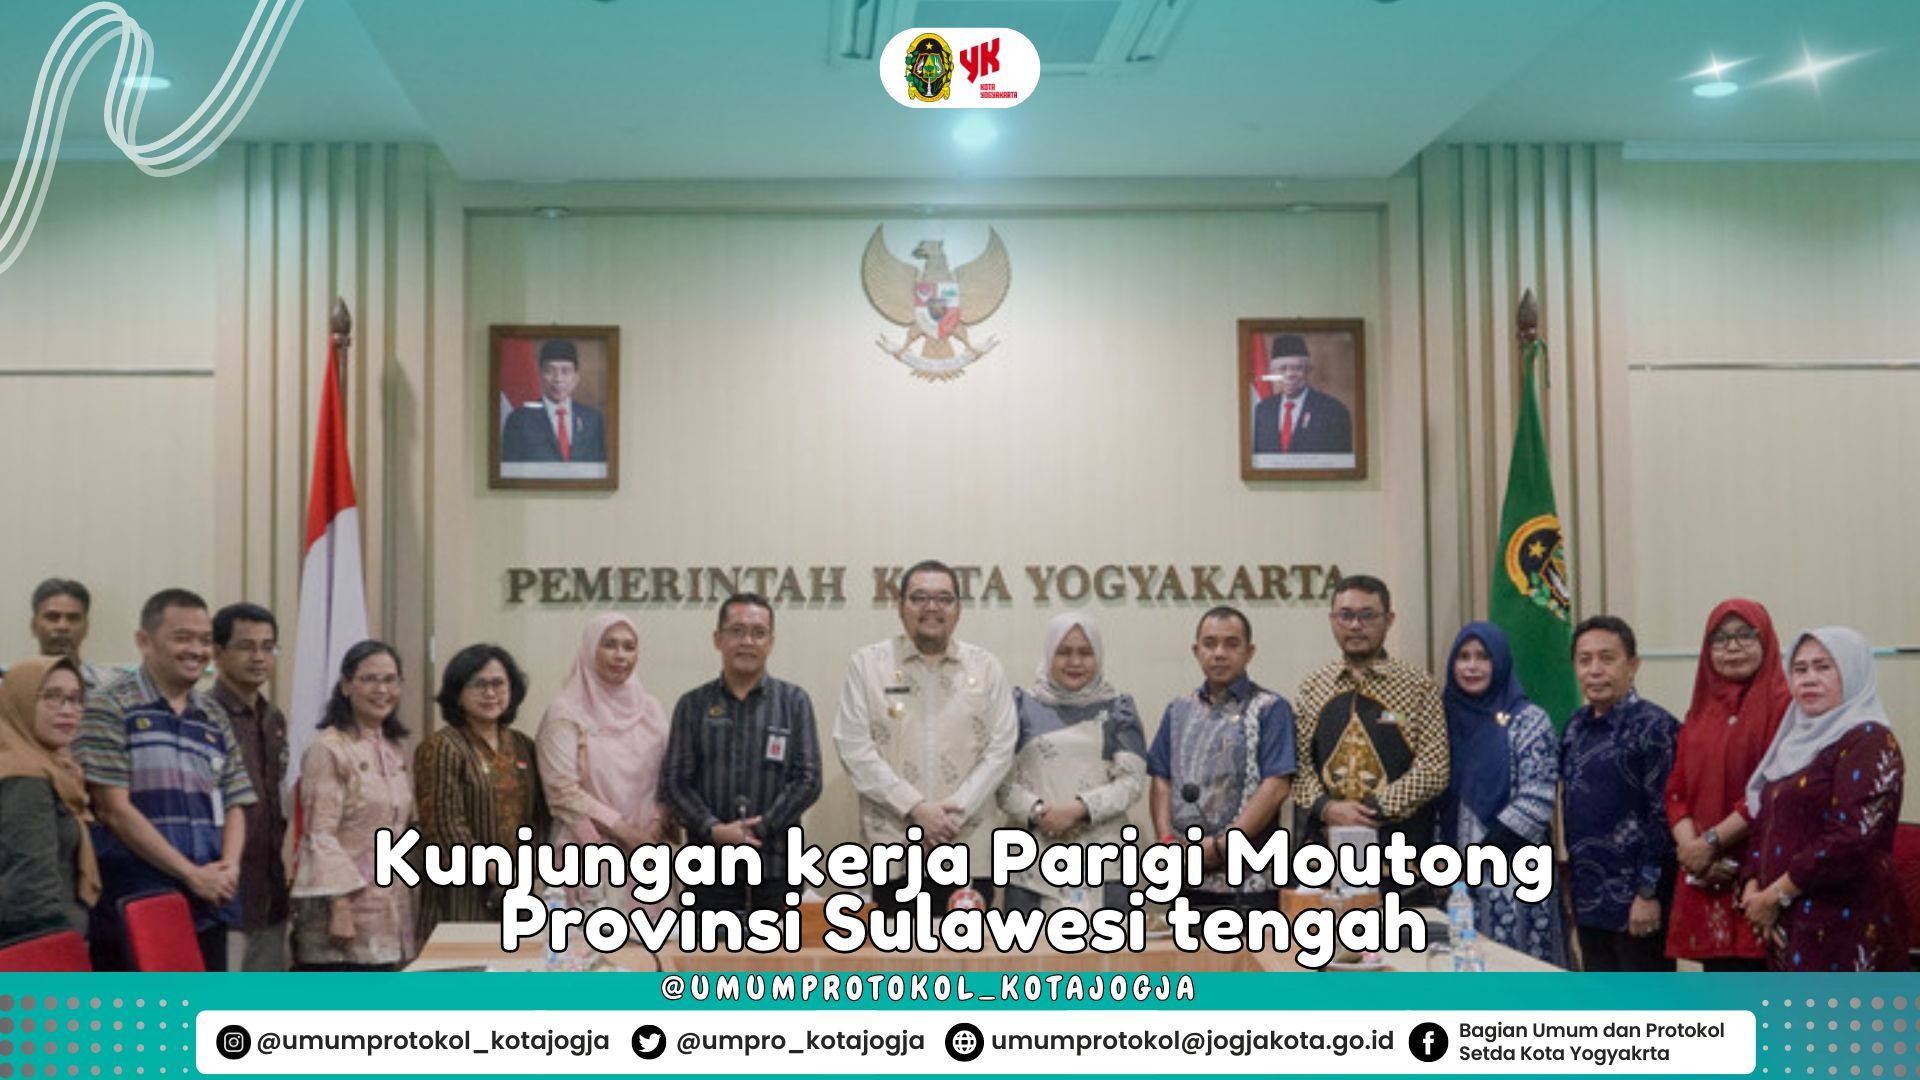 Belajar pentingnya  pelayanan pendidikan inklusi bagi penyandang disabilitas Pemerintah Kabupaten Parigi Moutong, Provinsi Sulawesi Tenggara di Kota Yogyakarta